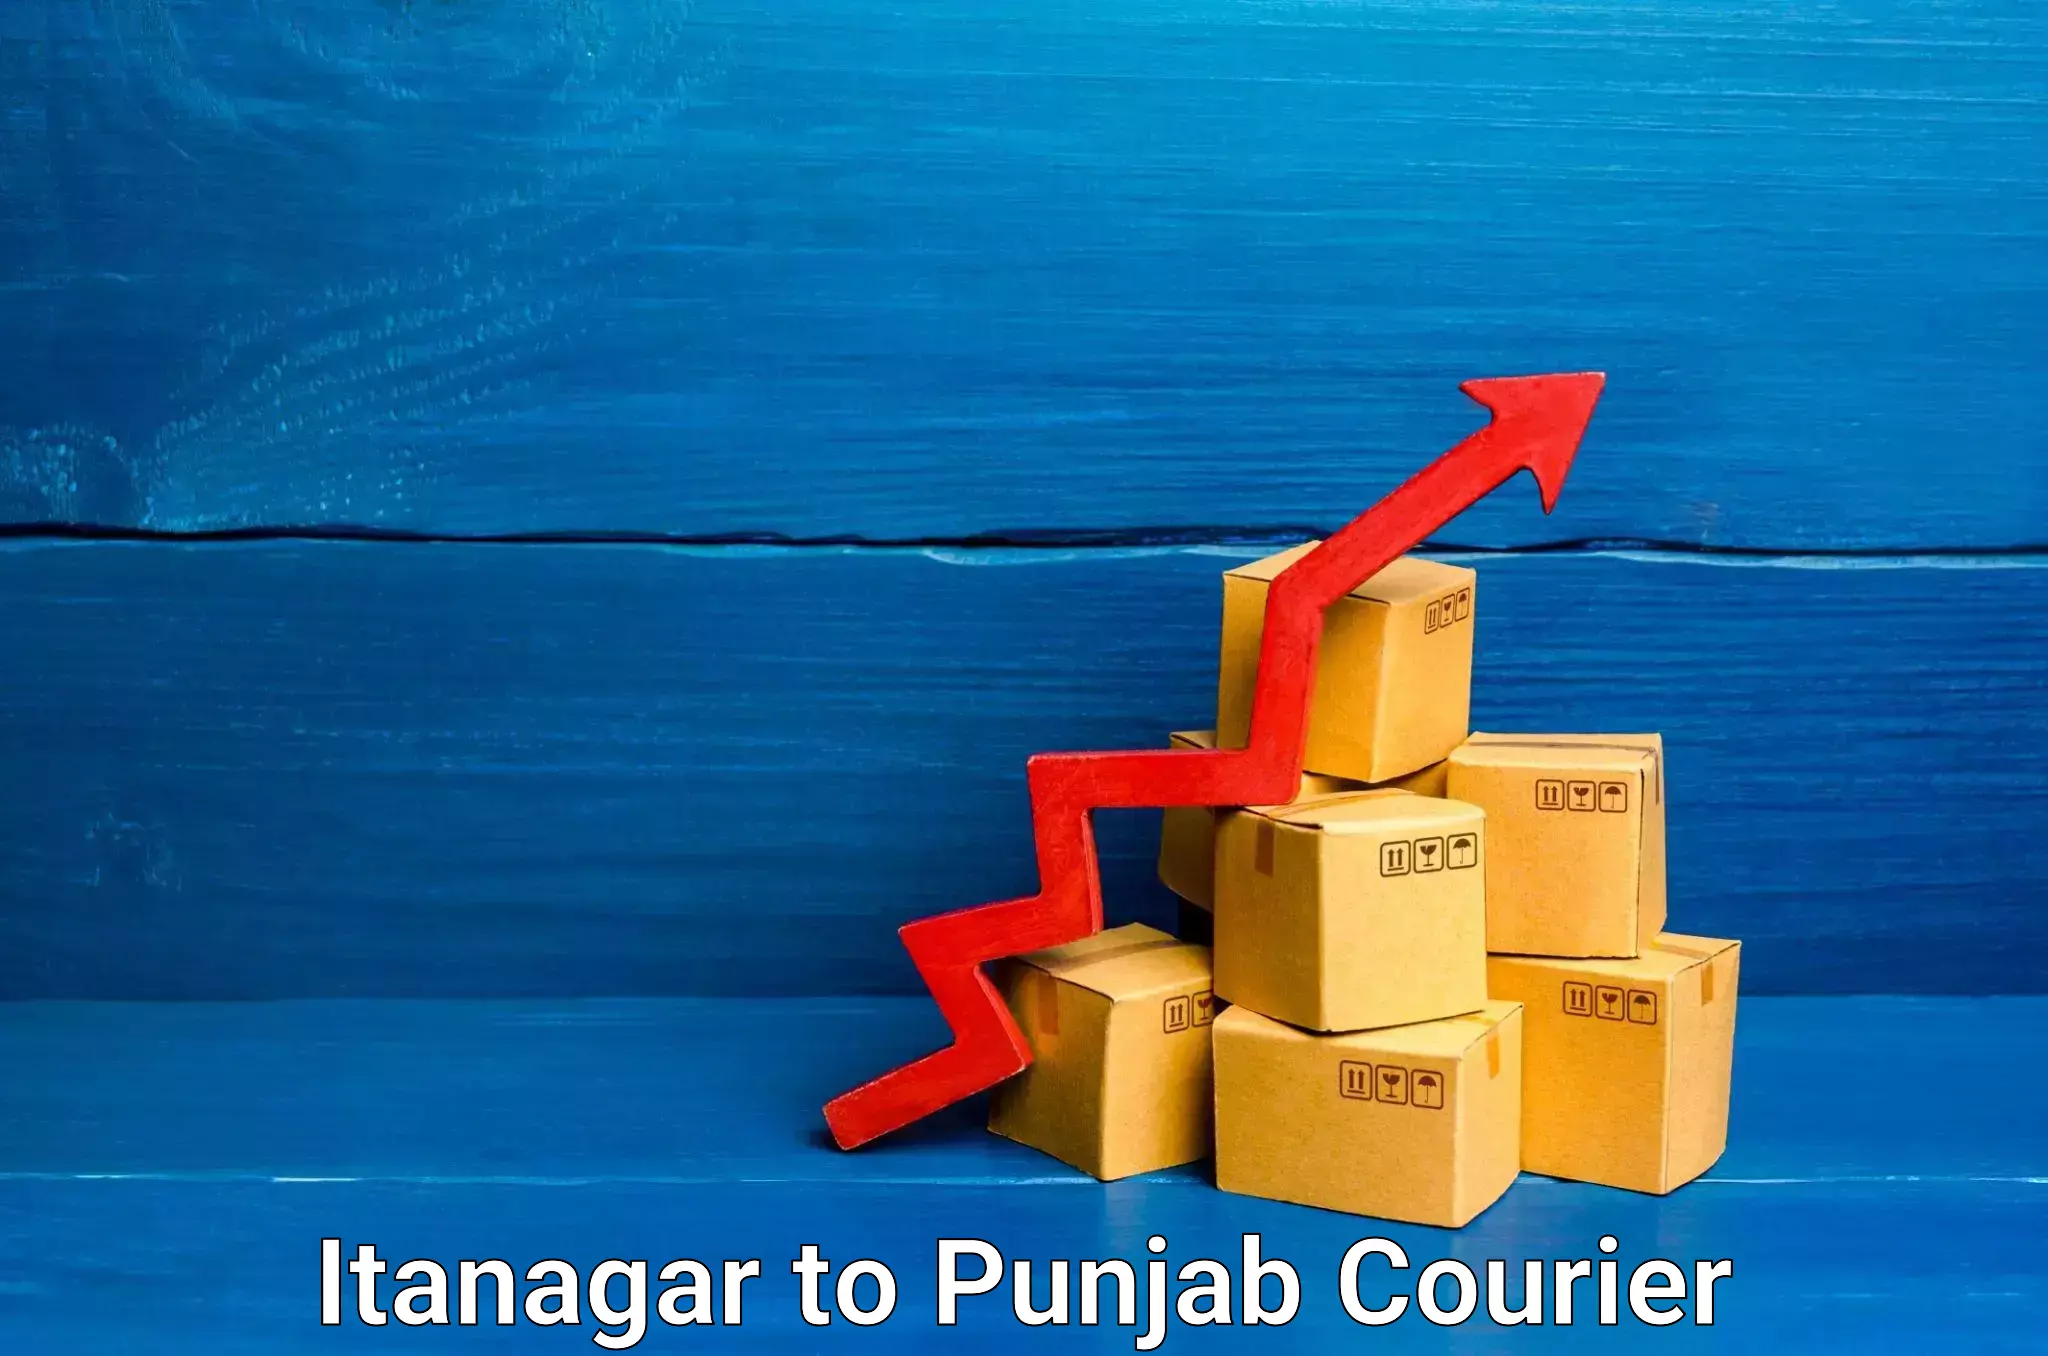 Reliable courier service Itanagar to Zirakpur